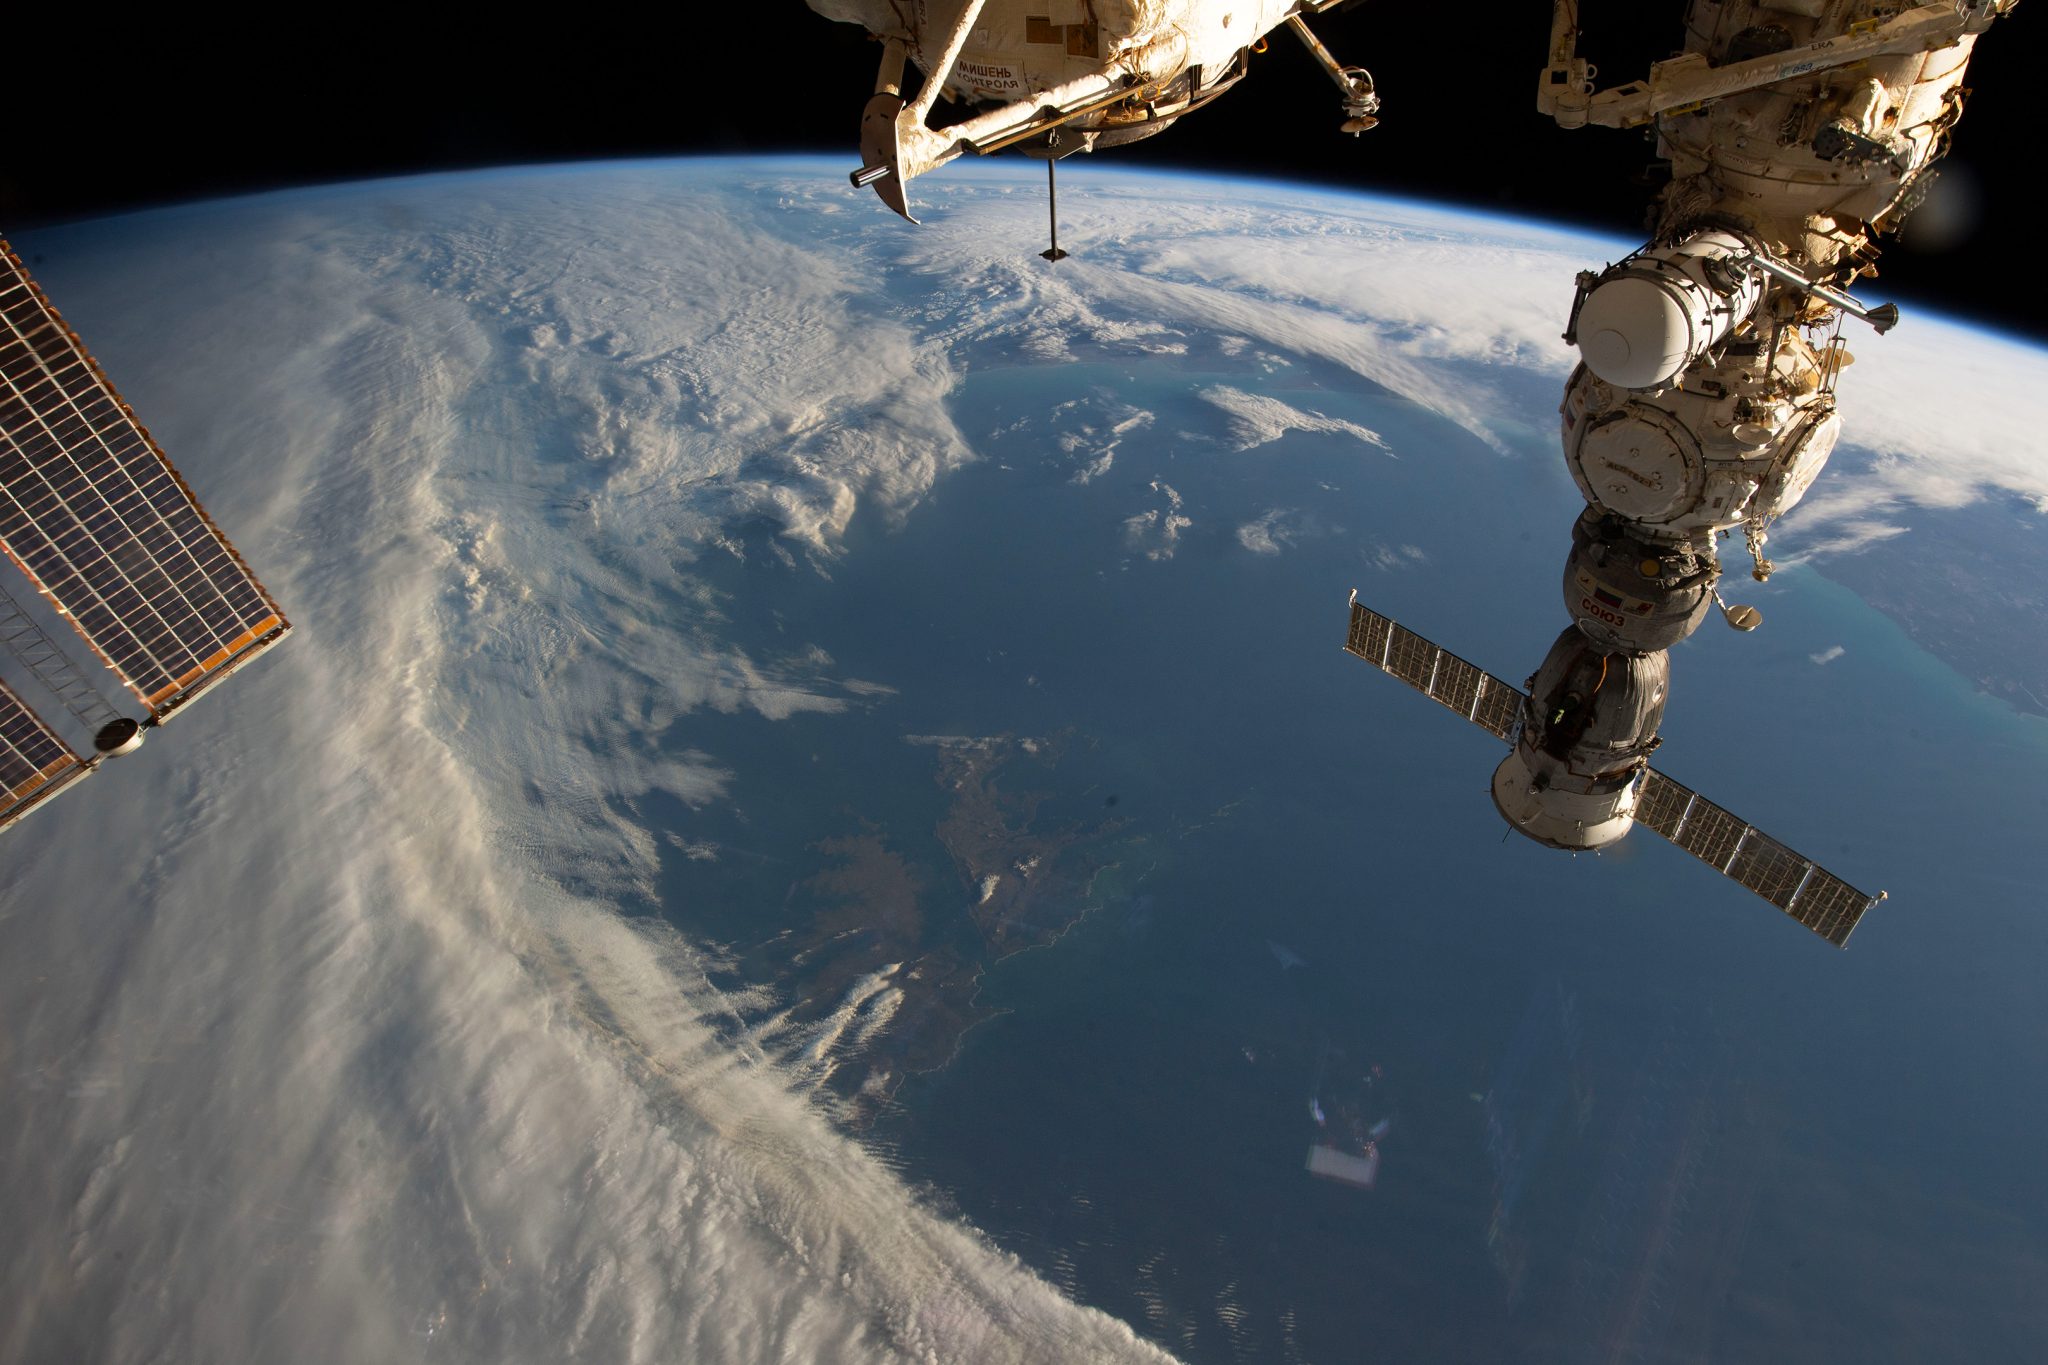 La tripulación de la estación espacial se encarga de las actualizaciones científicas y técnicas, las observaciones terrestres y los entrenamientos.